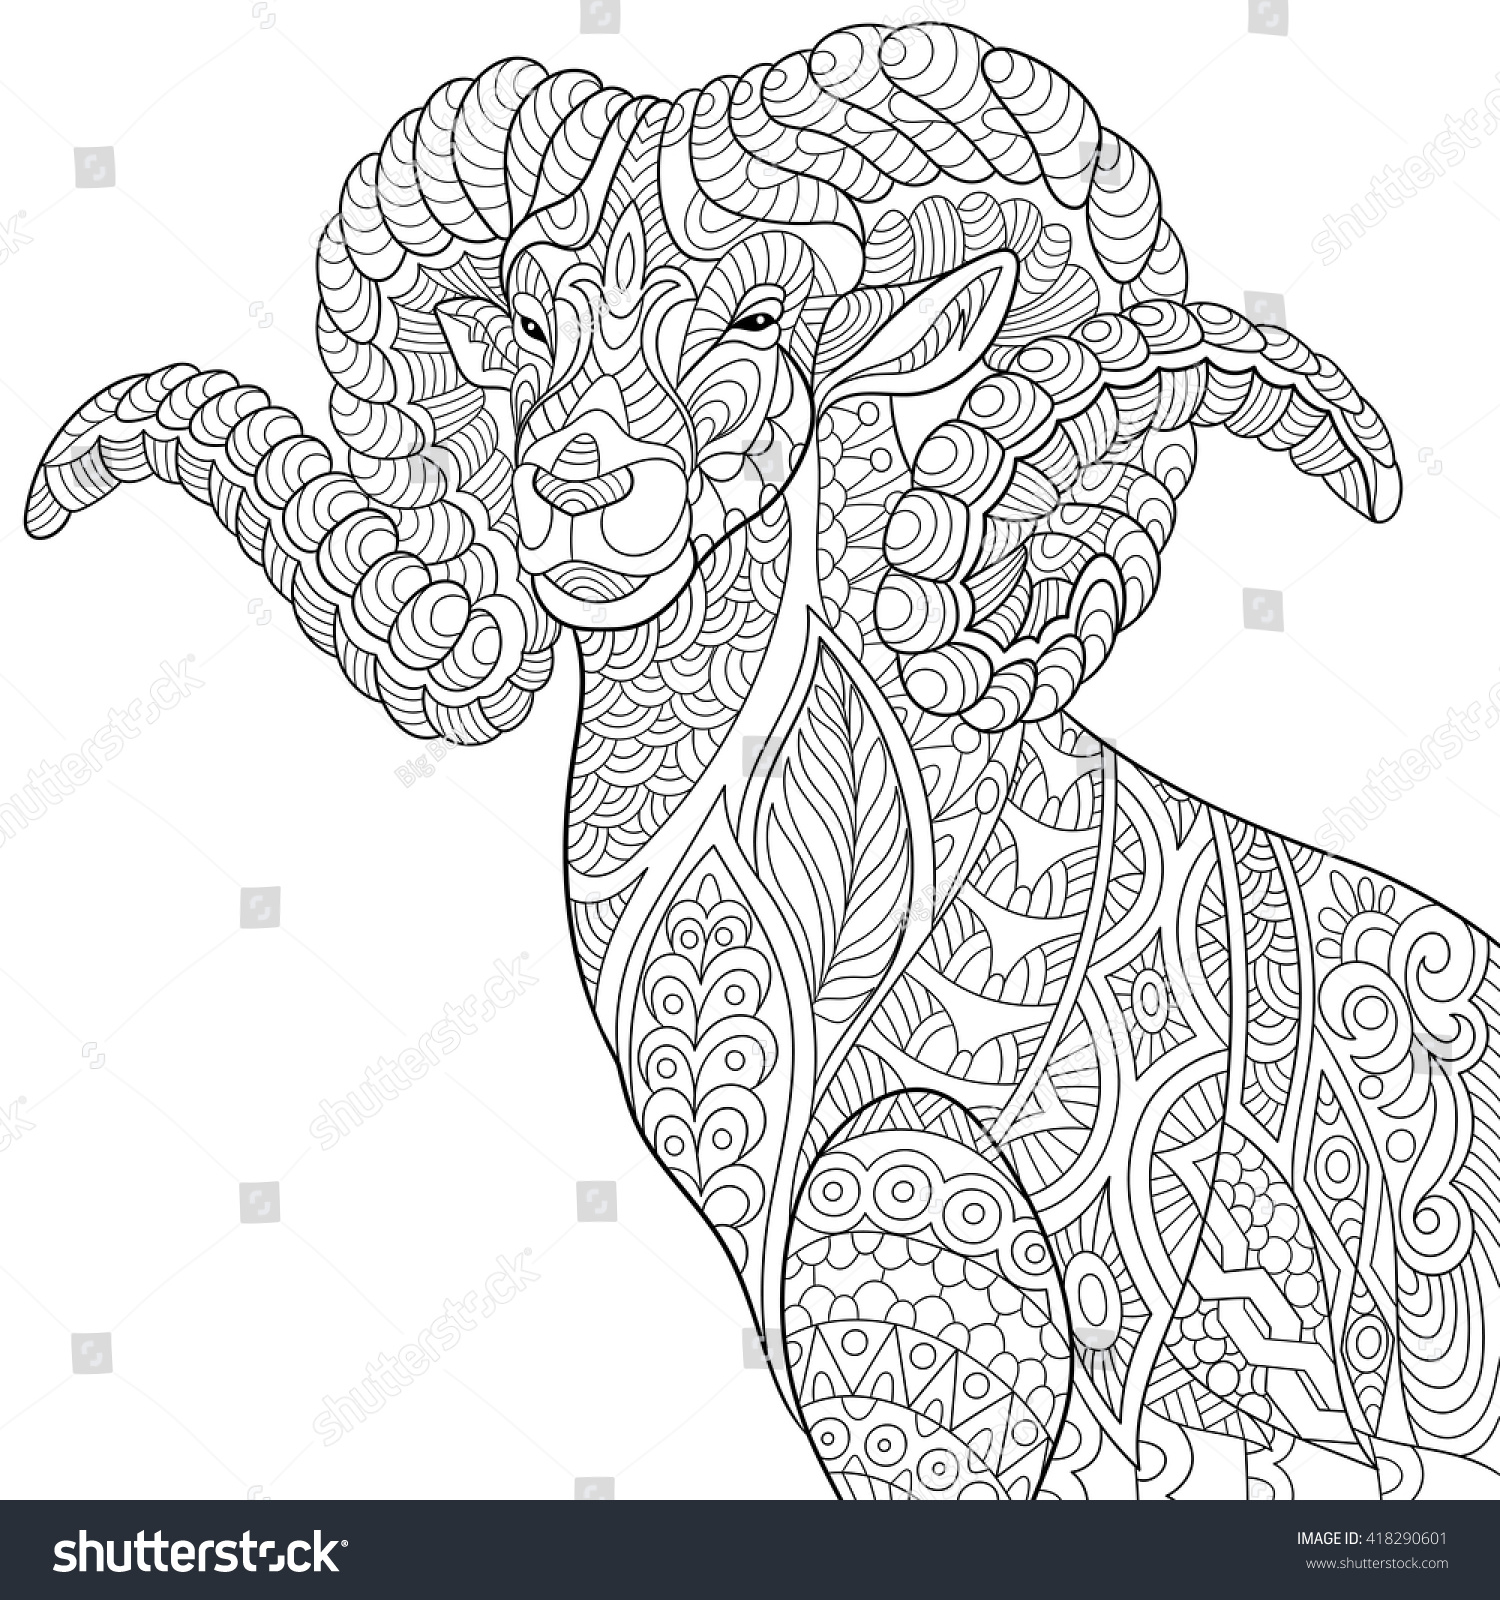 Zentangle Stylized Cartoon Goat Ram Ibex Stock Vector 418290601